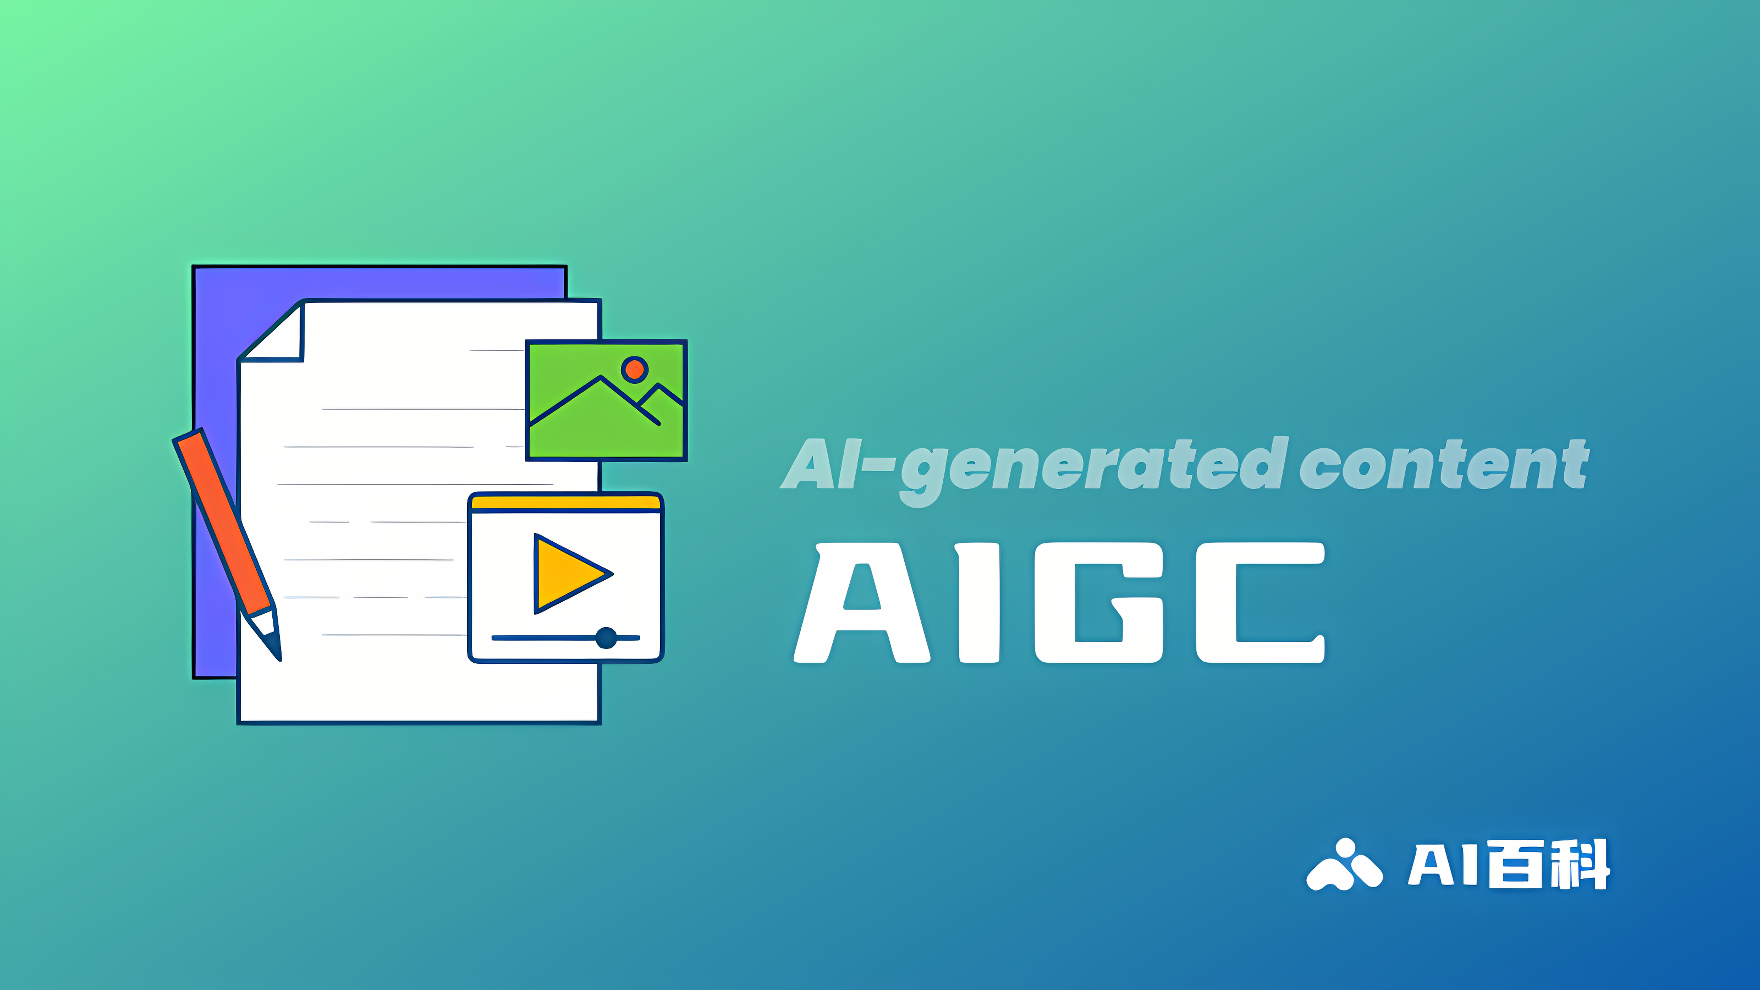 图片展示了代表人工智能生成内容的图标和文字“AIGC”，背景是渐变的绿蓝色。